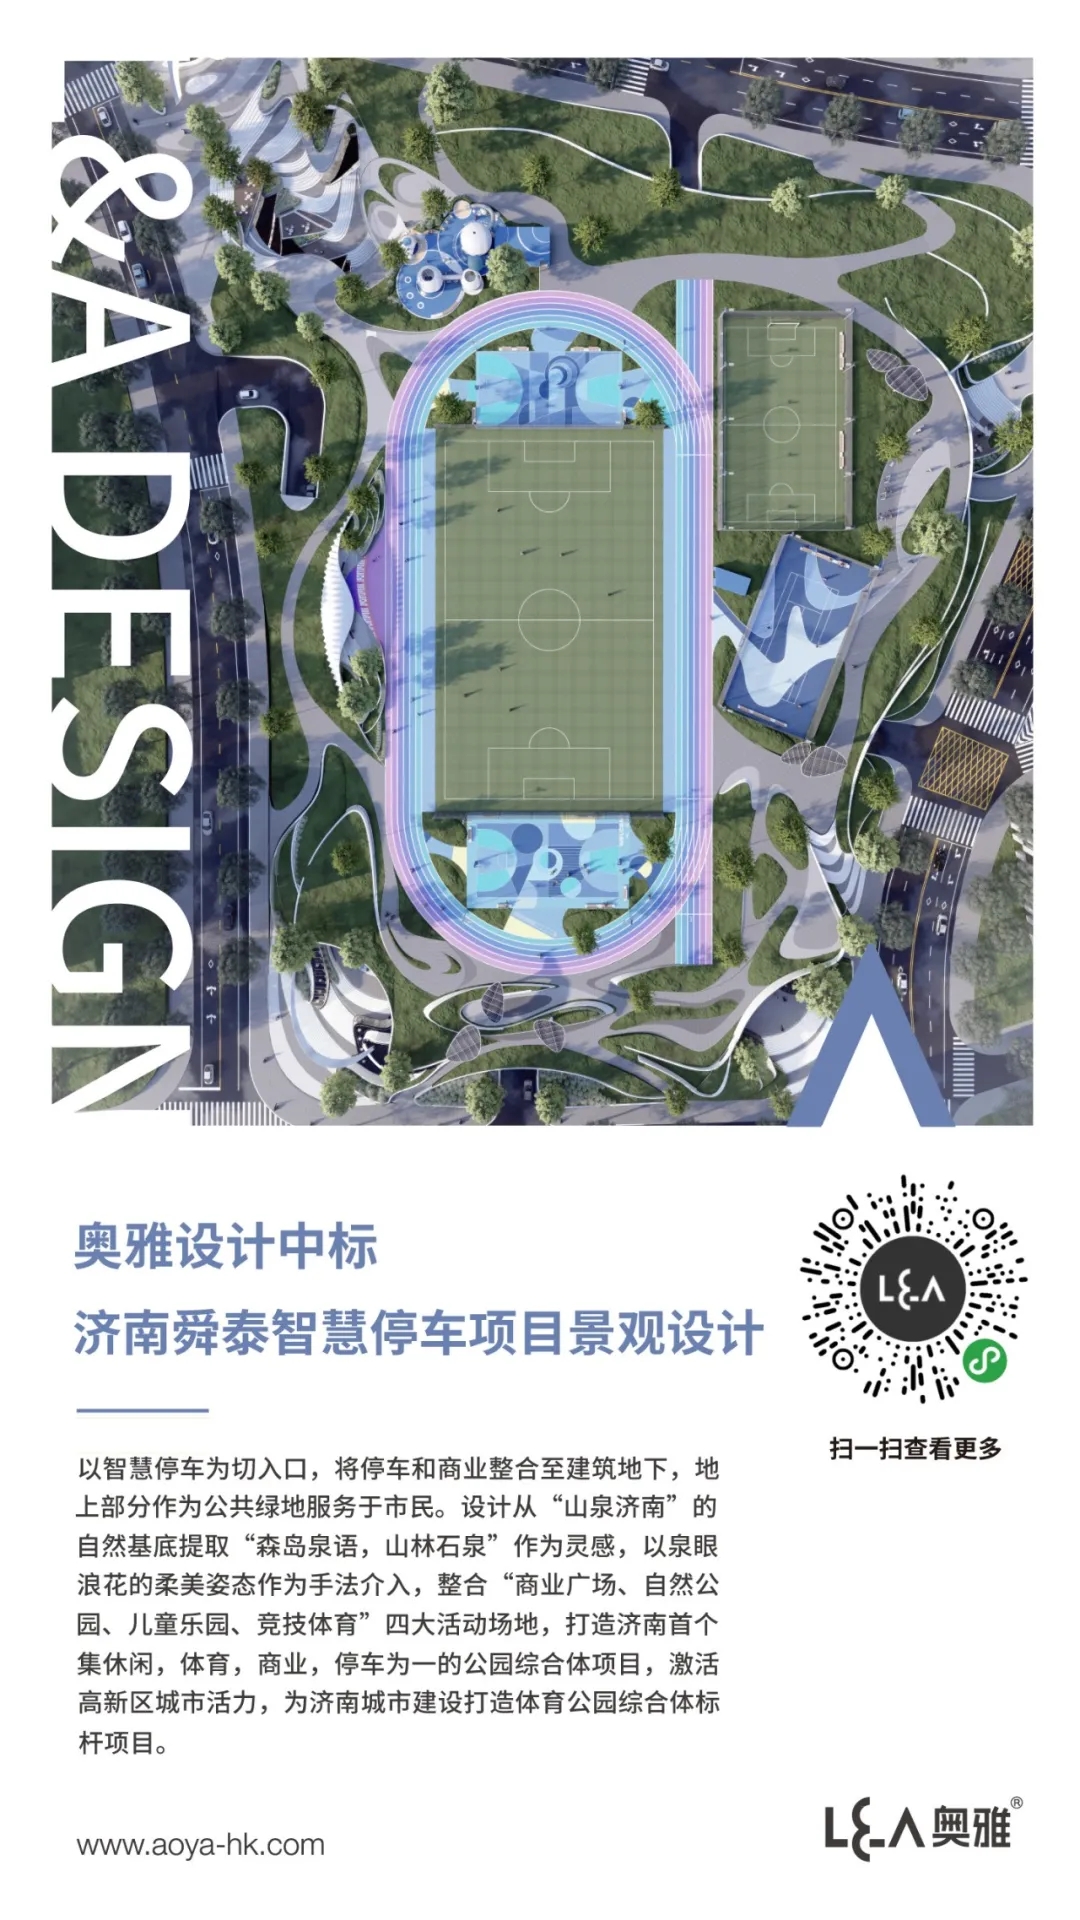 奥雅设计中标济南舜泰智慧停车项目景观设计